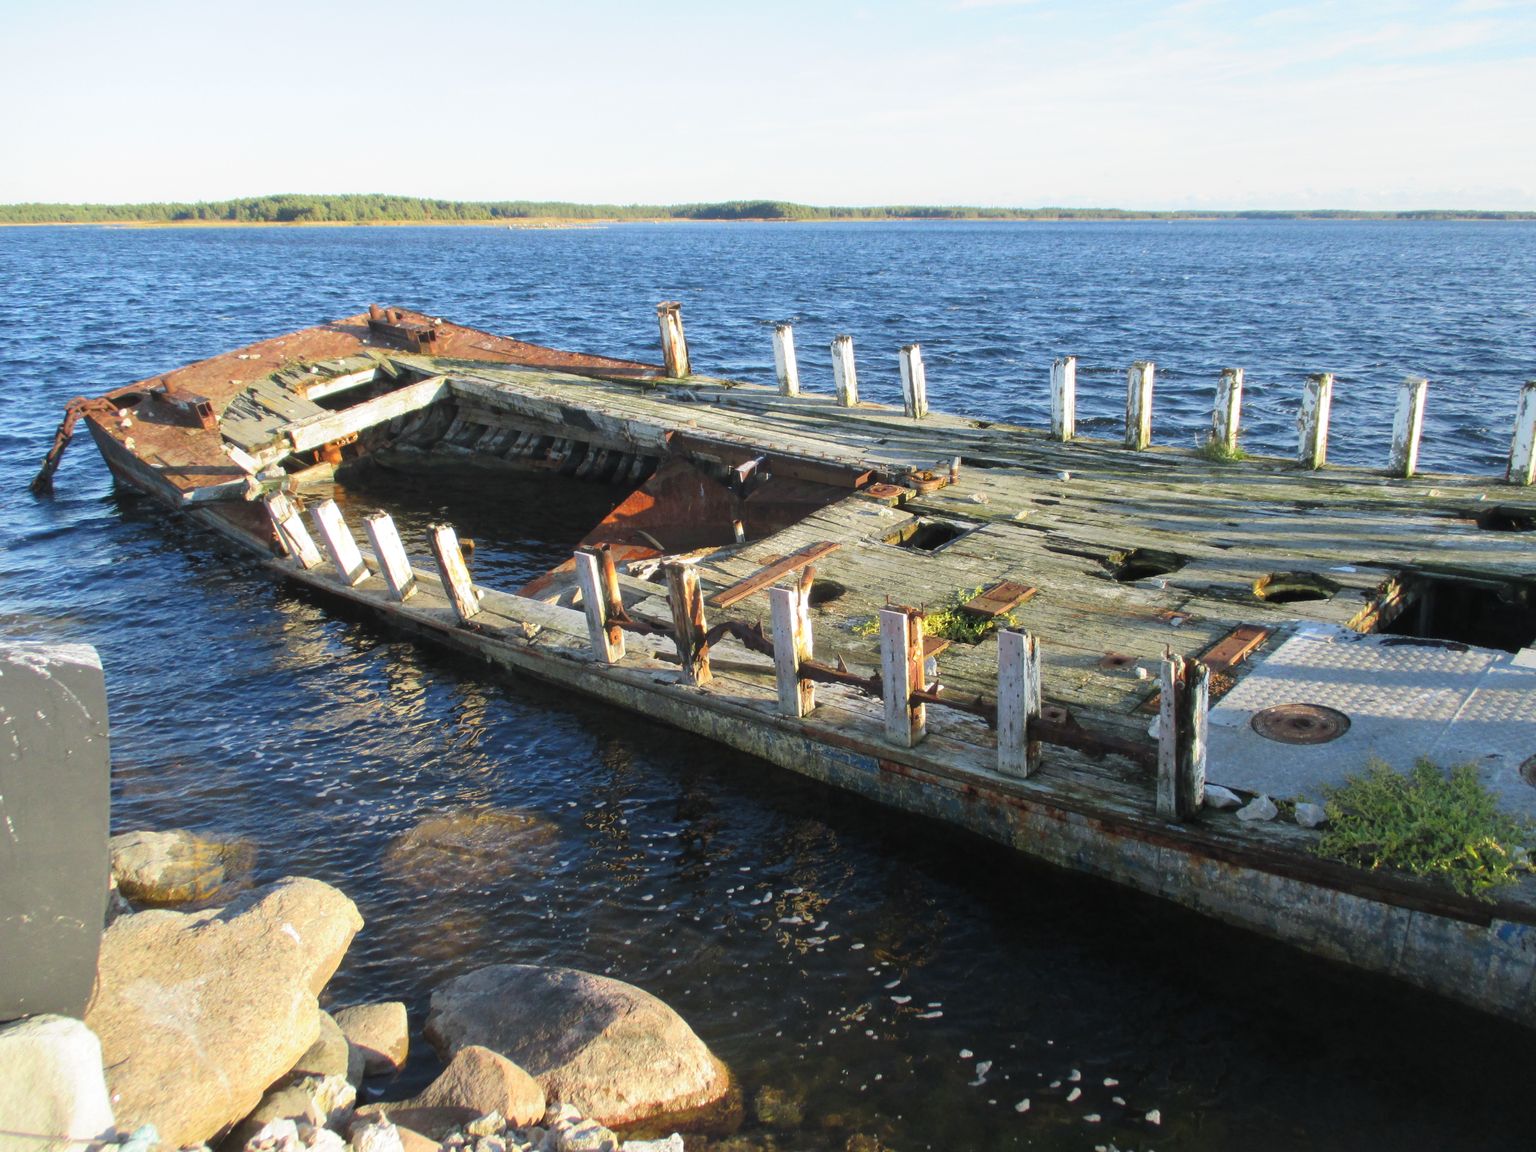 VRAKK RÄSITUD SADAMAS Eelmise sajandi esimeses pooles oli Jaagarahu sadam Saaremaa üks peamisi mereväravaid. Kunagisest sadamast annavad tunnistust räsitud kai ääres lösutav laevavrakk.